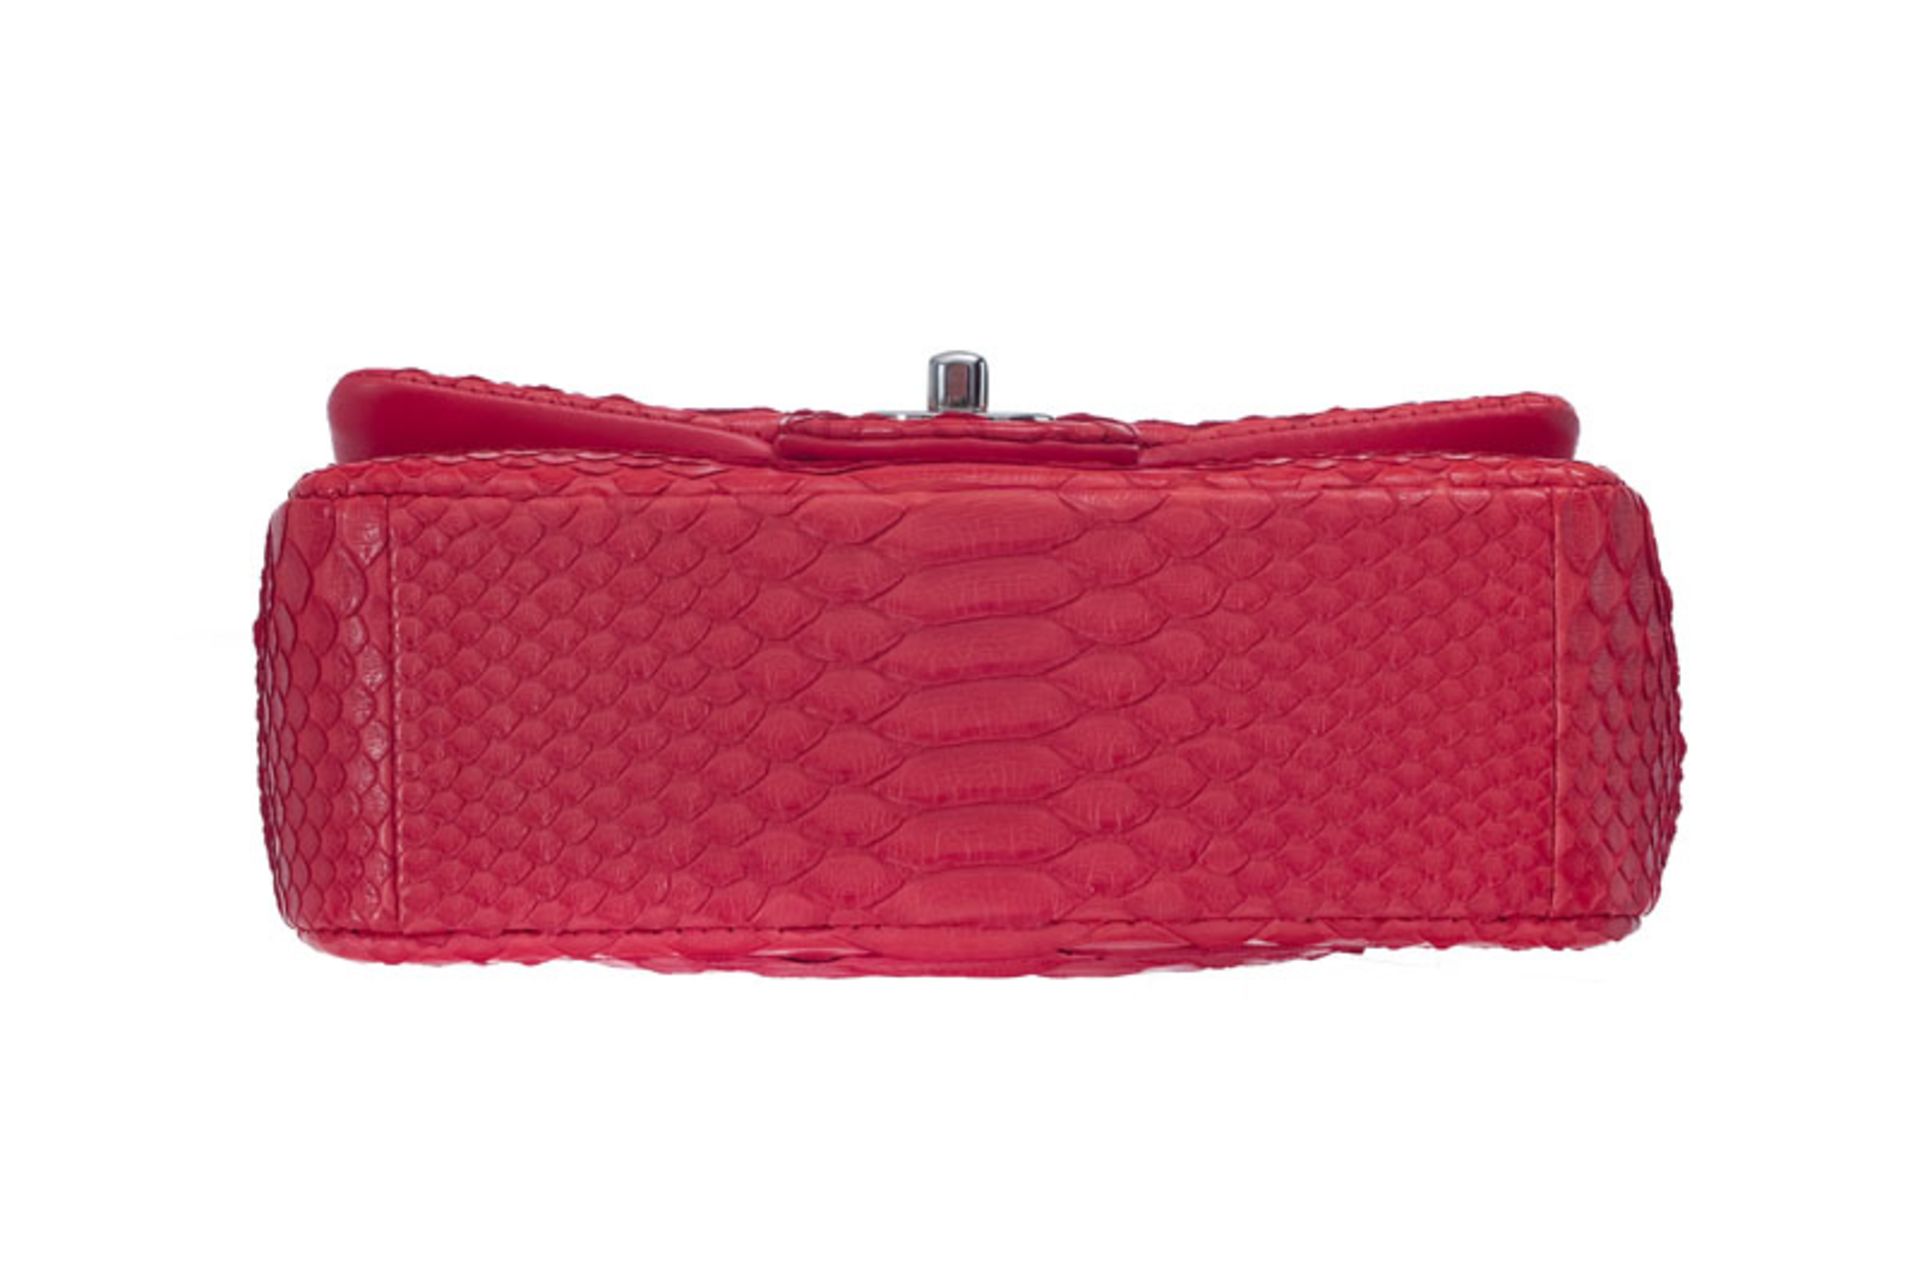 Chanel, mini sac à rabat Timeless classique en python corail rouge, carte d'authenticité, housse, bo - Image 3 of 3